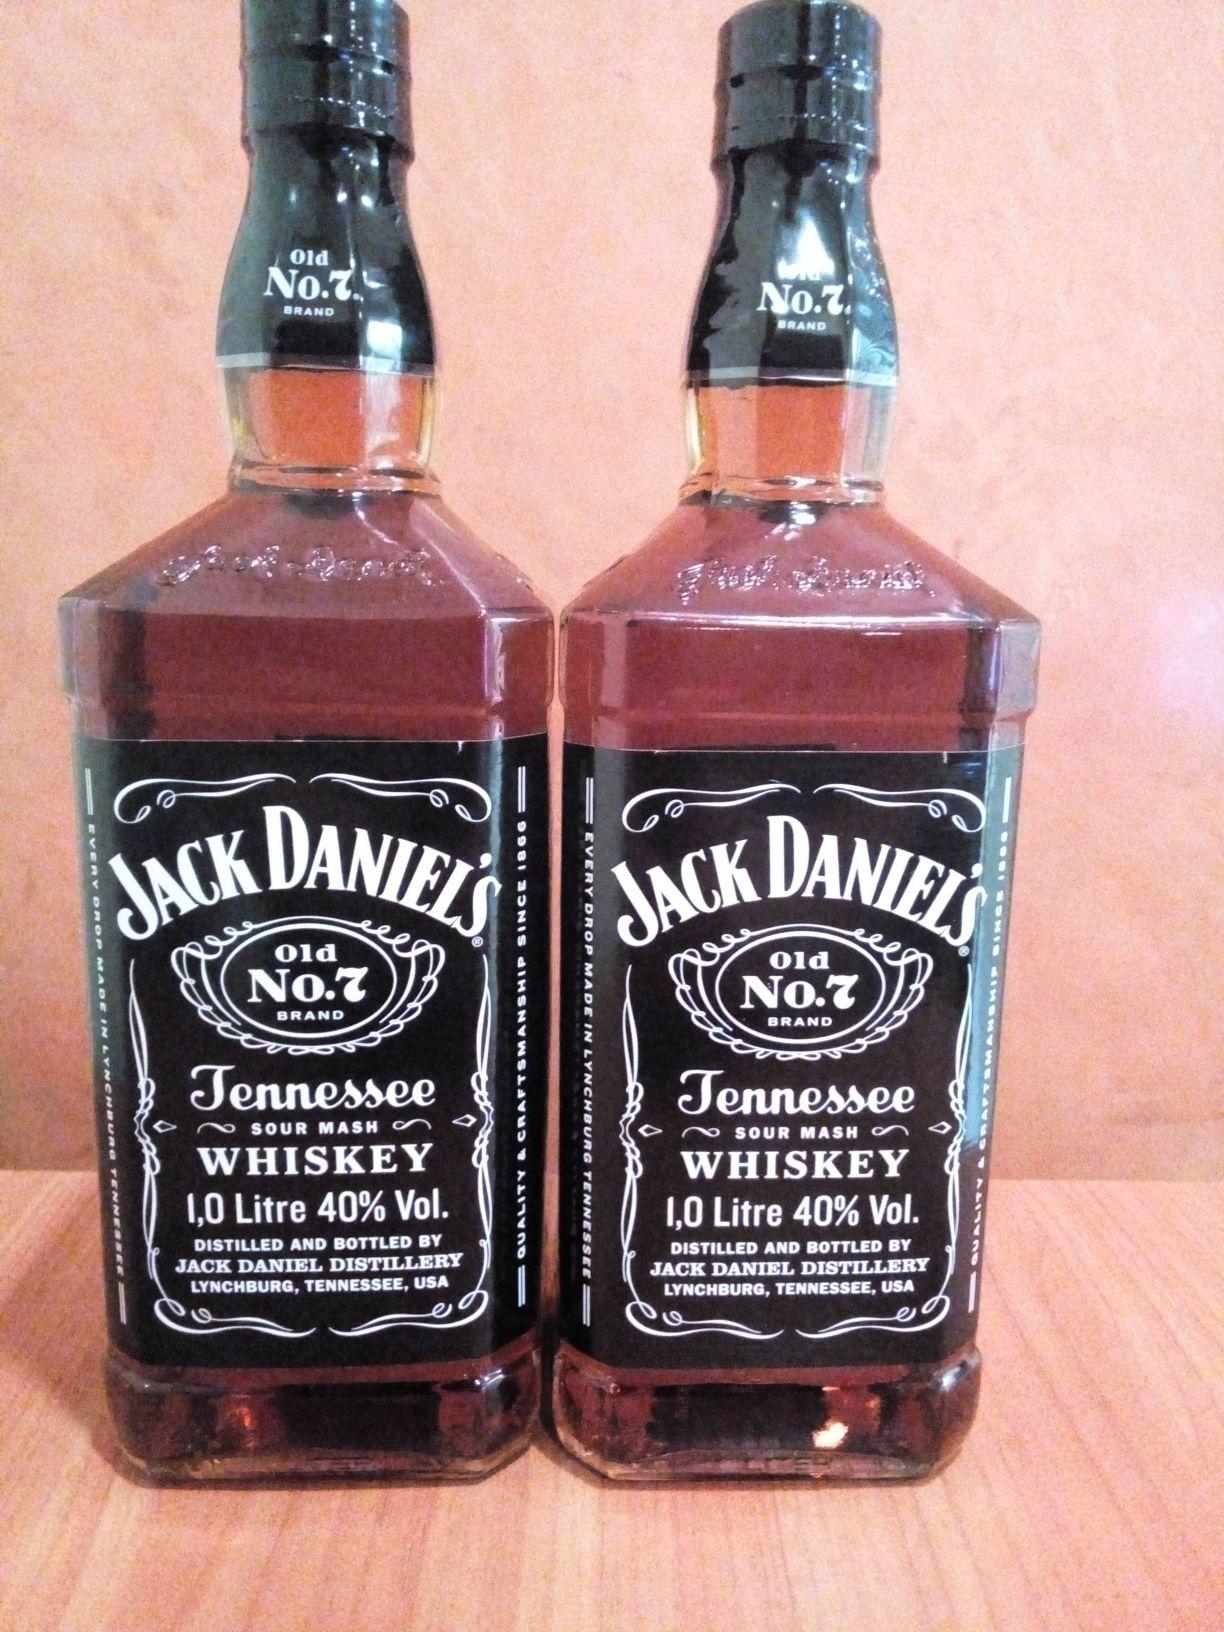 Виски jack daniel’s — описание, цена и как правильно пить с чем сочитать и как отличить подделку